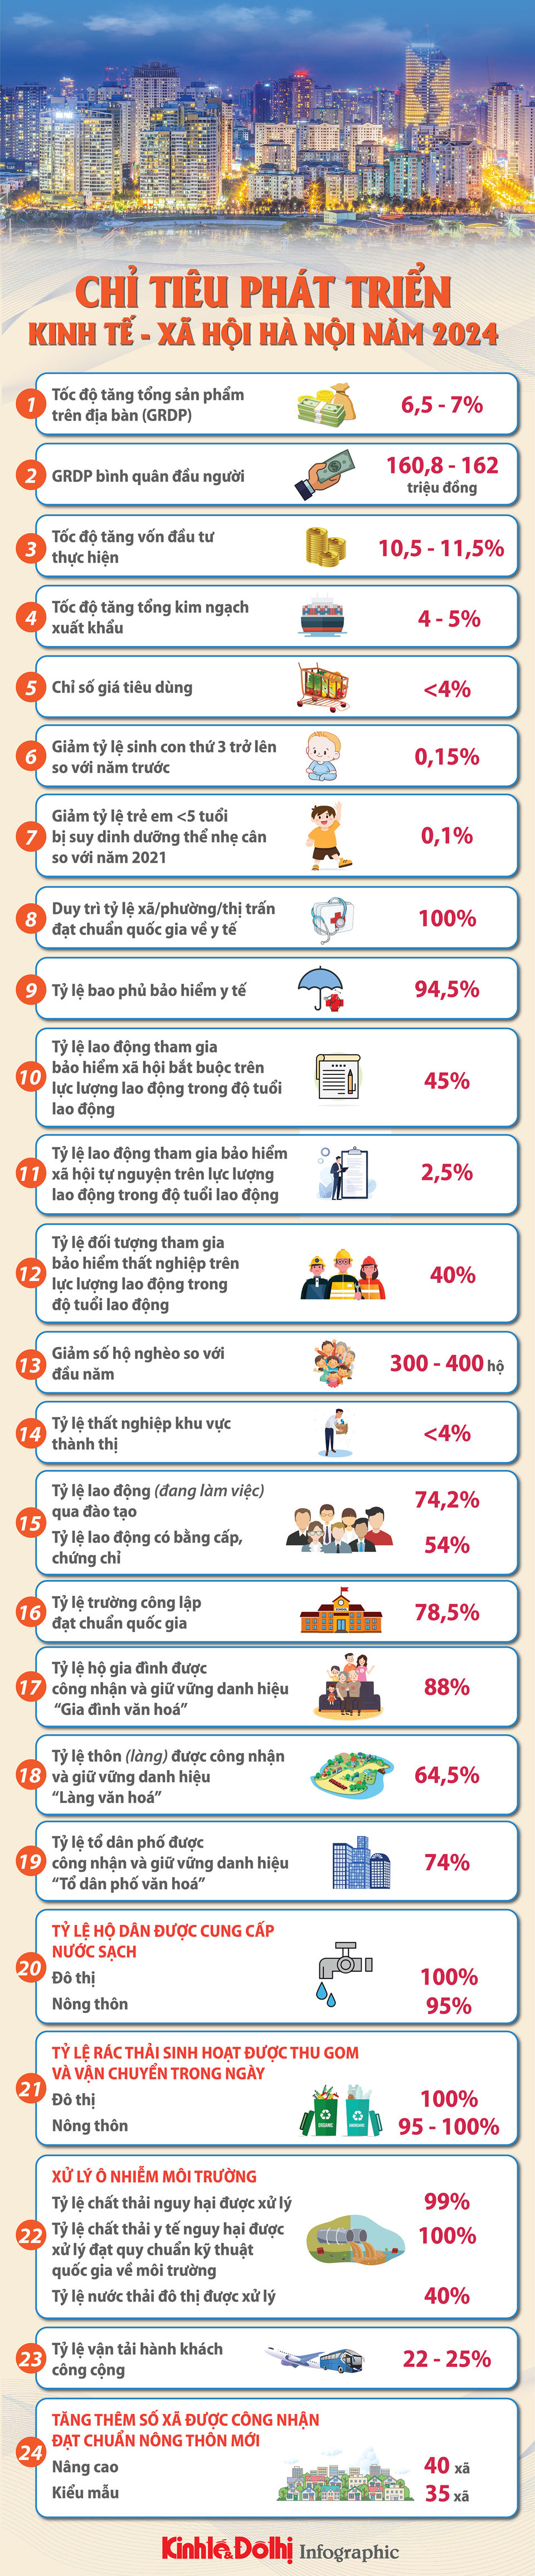 24 chỉ tiêu phát triển kinh tế - xã hội năm 2024 của Hà Nội - Ảnh 1